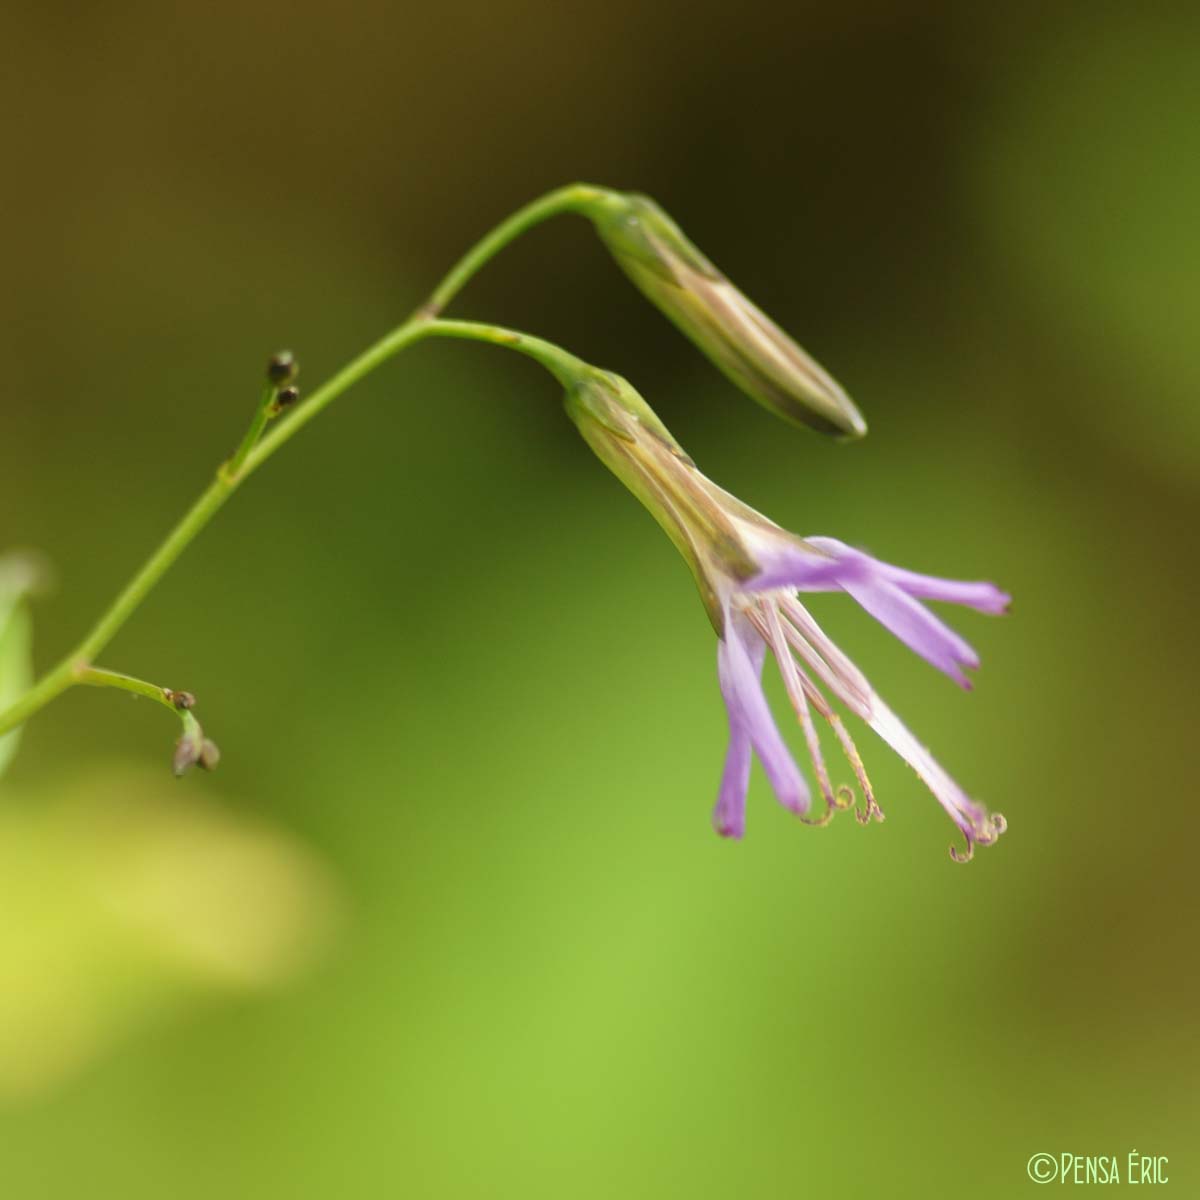 Prénanthe pourpre - Prenanthes purpurea